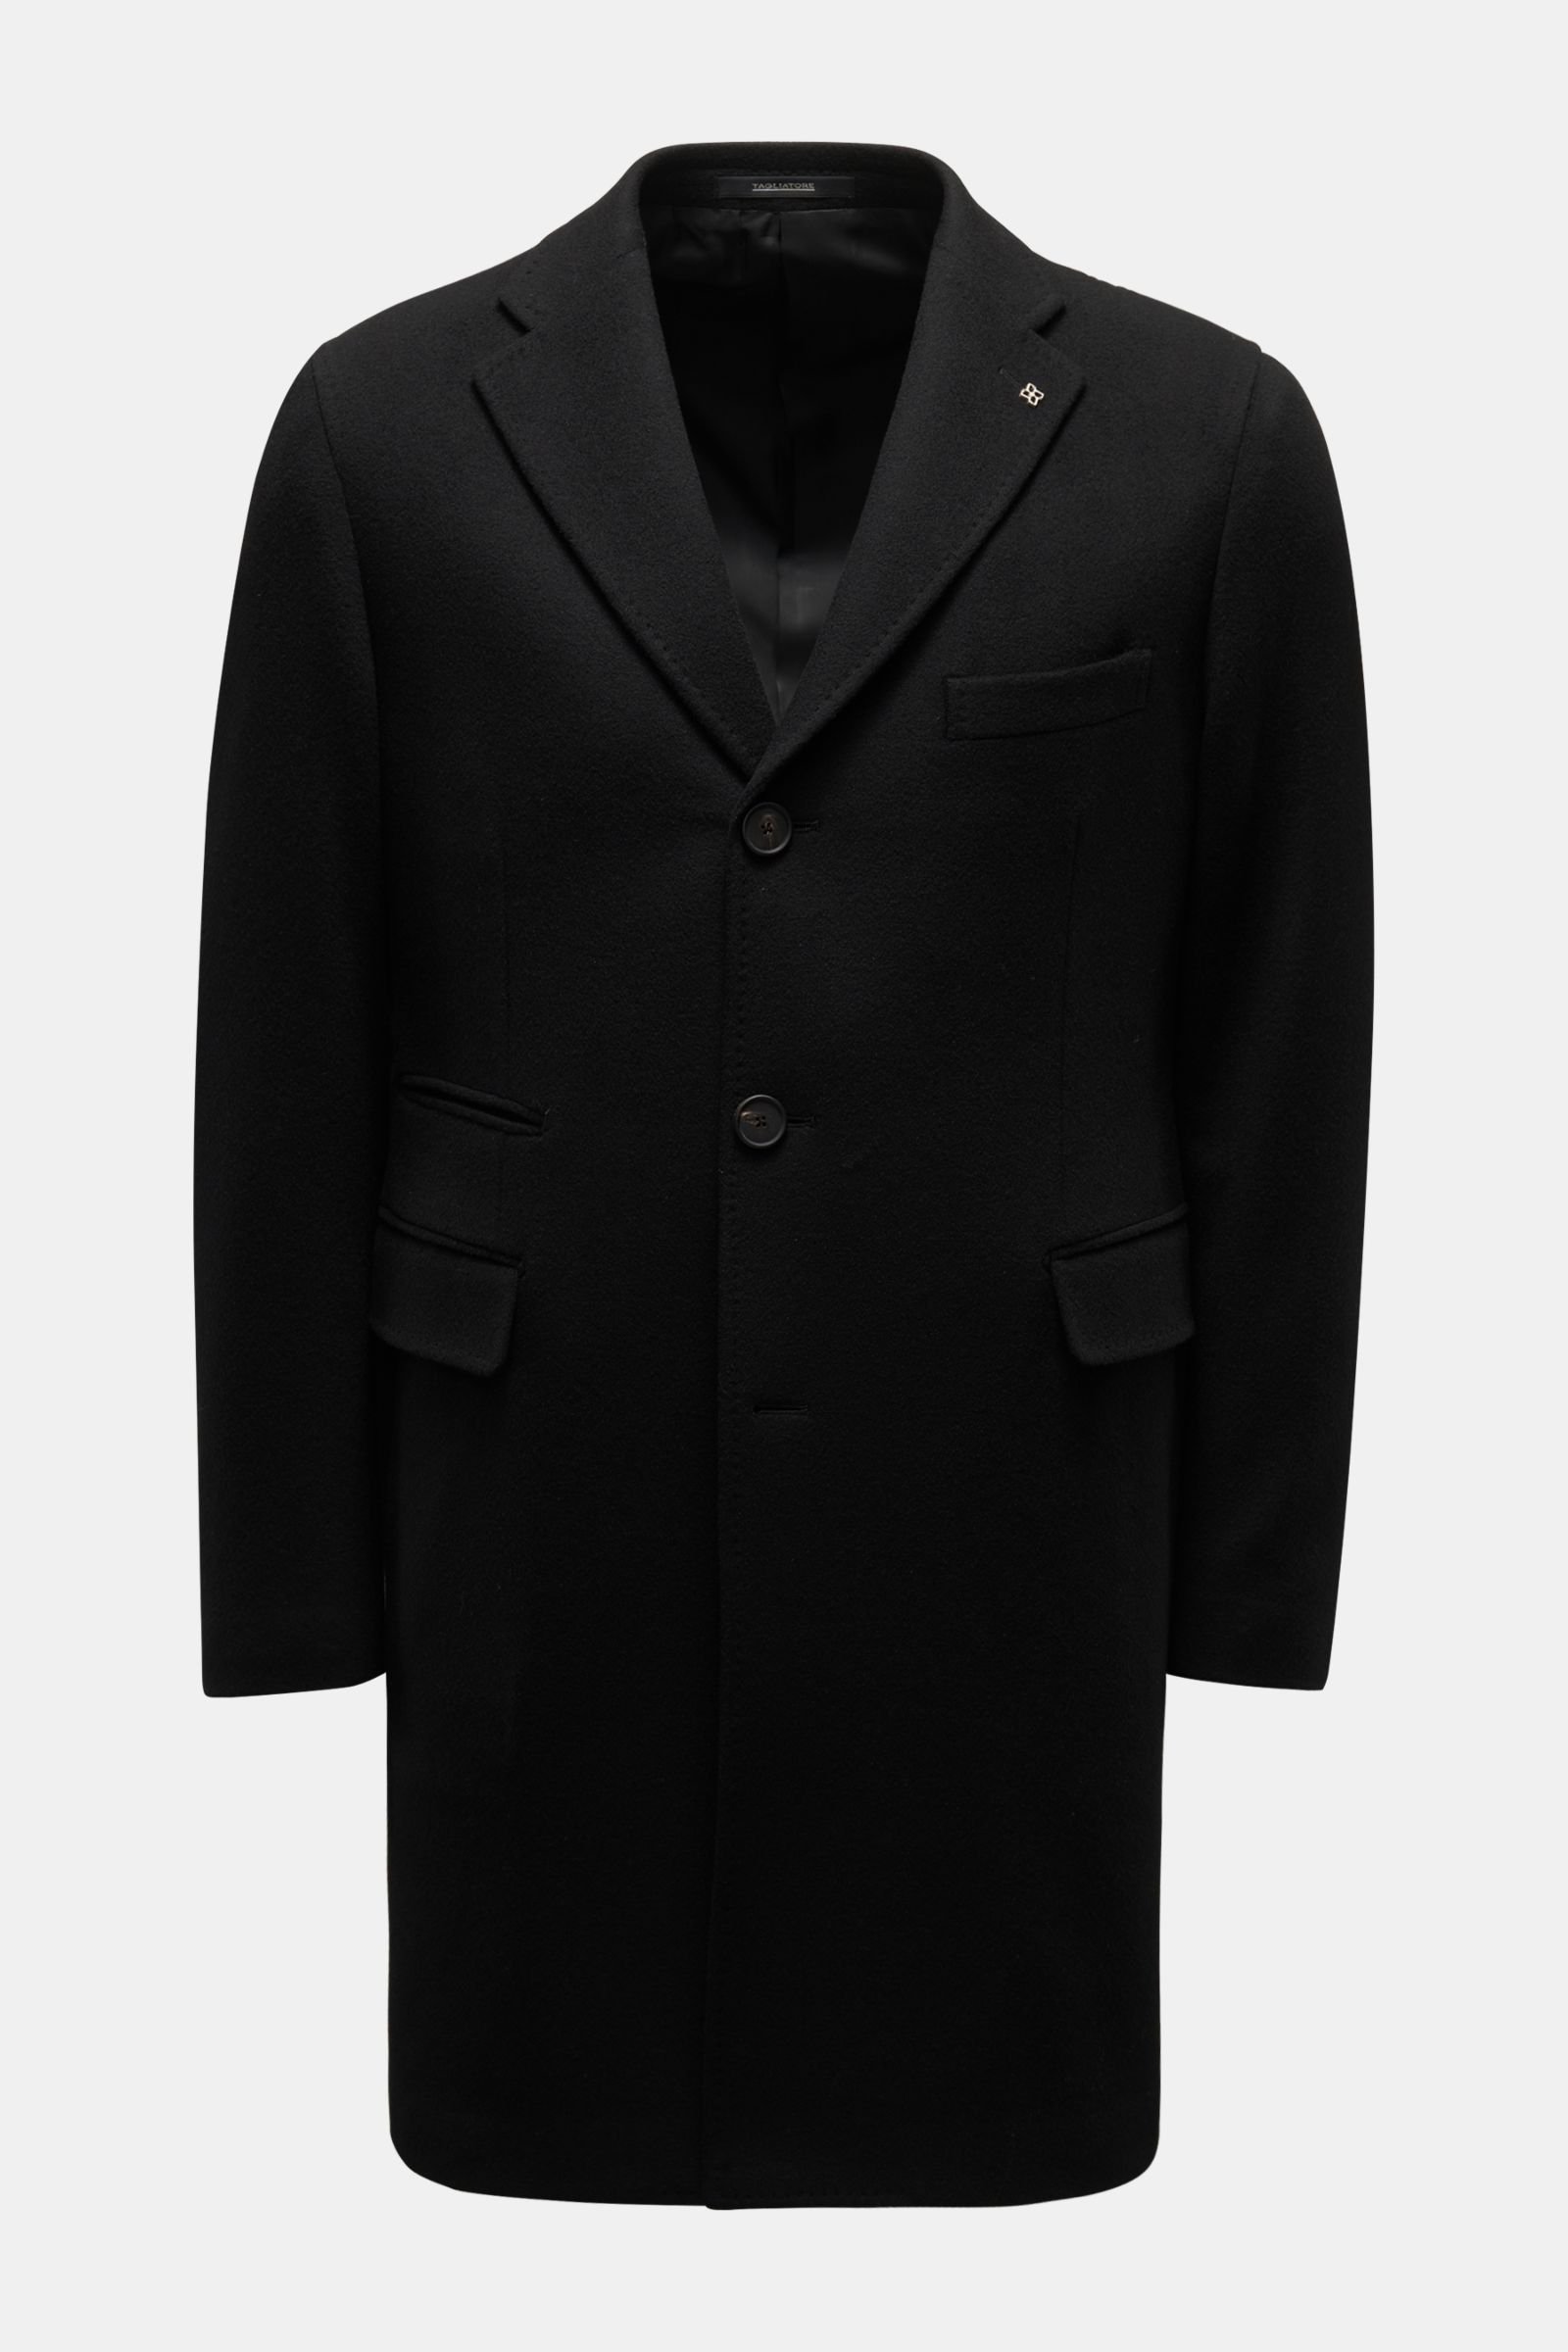 Cashmere Mantel schwarz